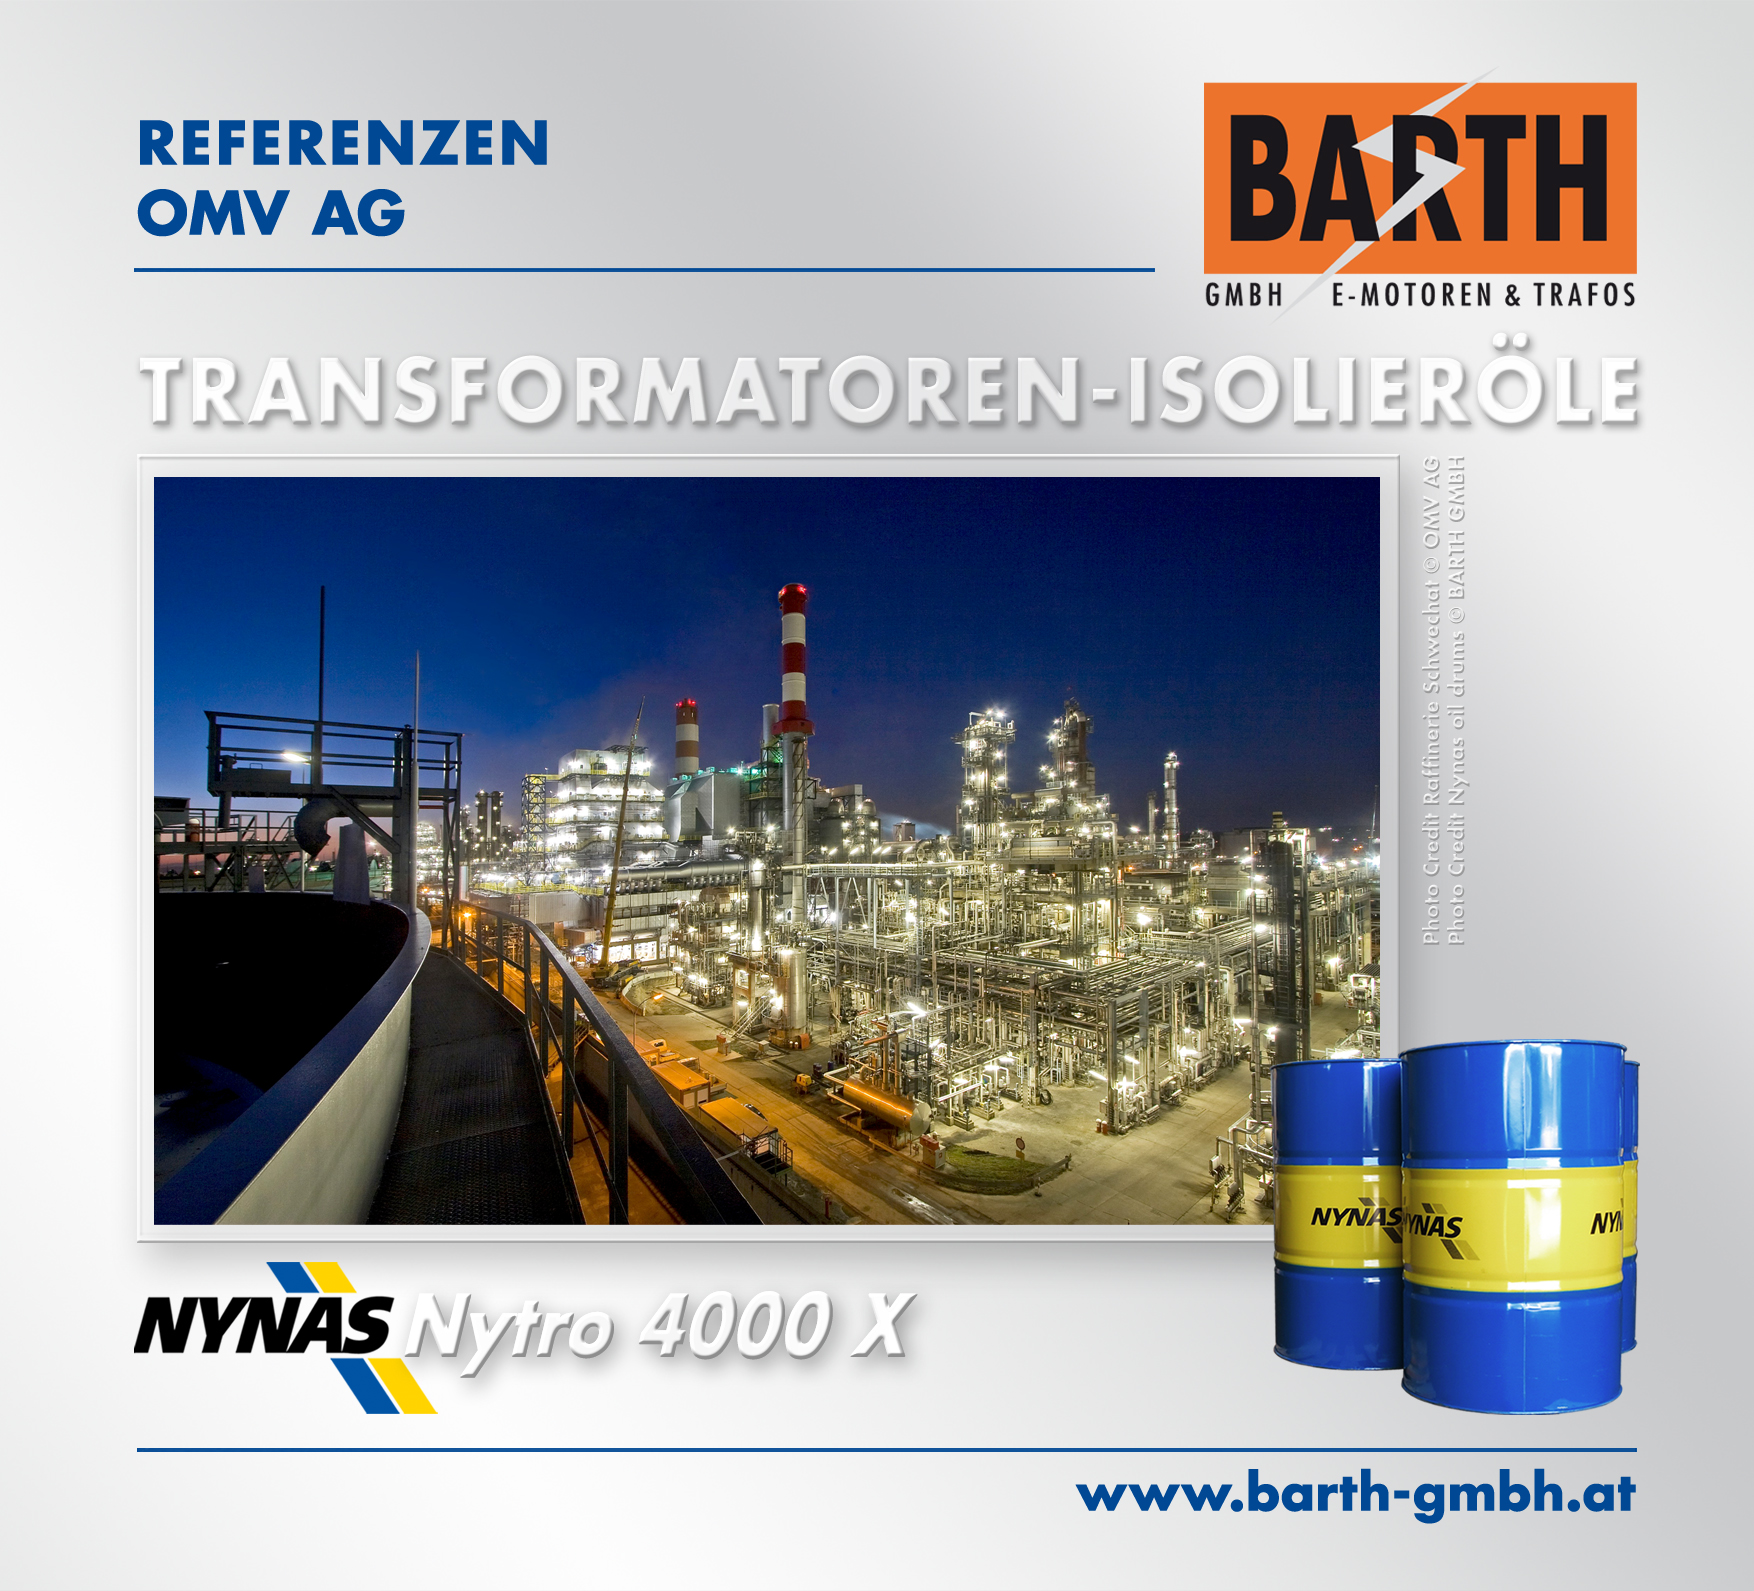 Transformatoren-Isolieröle<br />Foto Raffinerie Schwechat © OMV Aktiengesellschaft<br />Foto NYNAS Nytro 4000X Oil Drums © BARTH GMBH